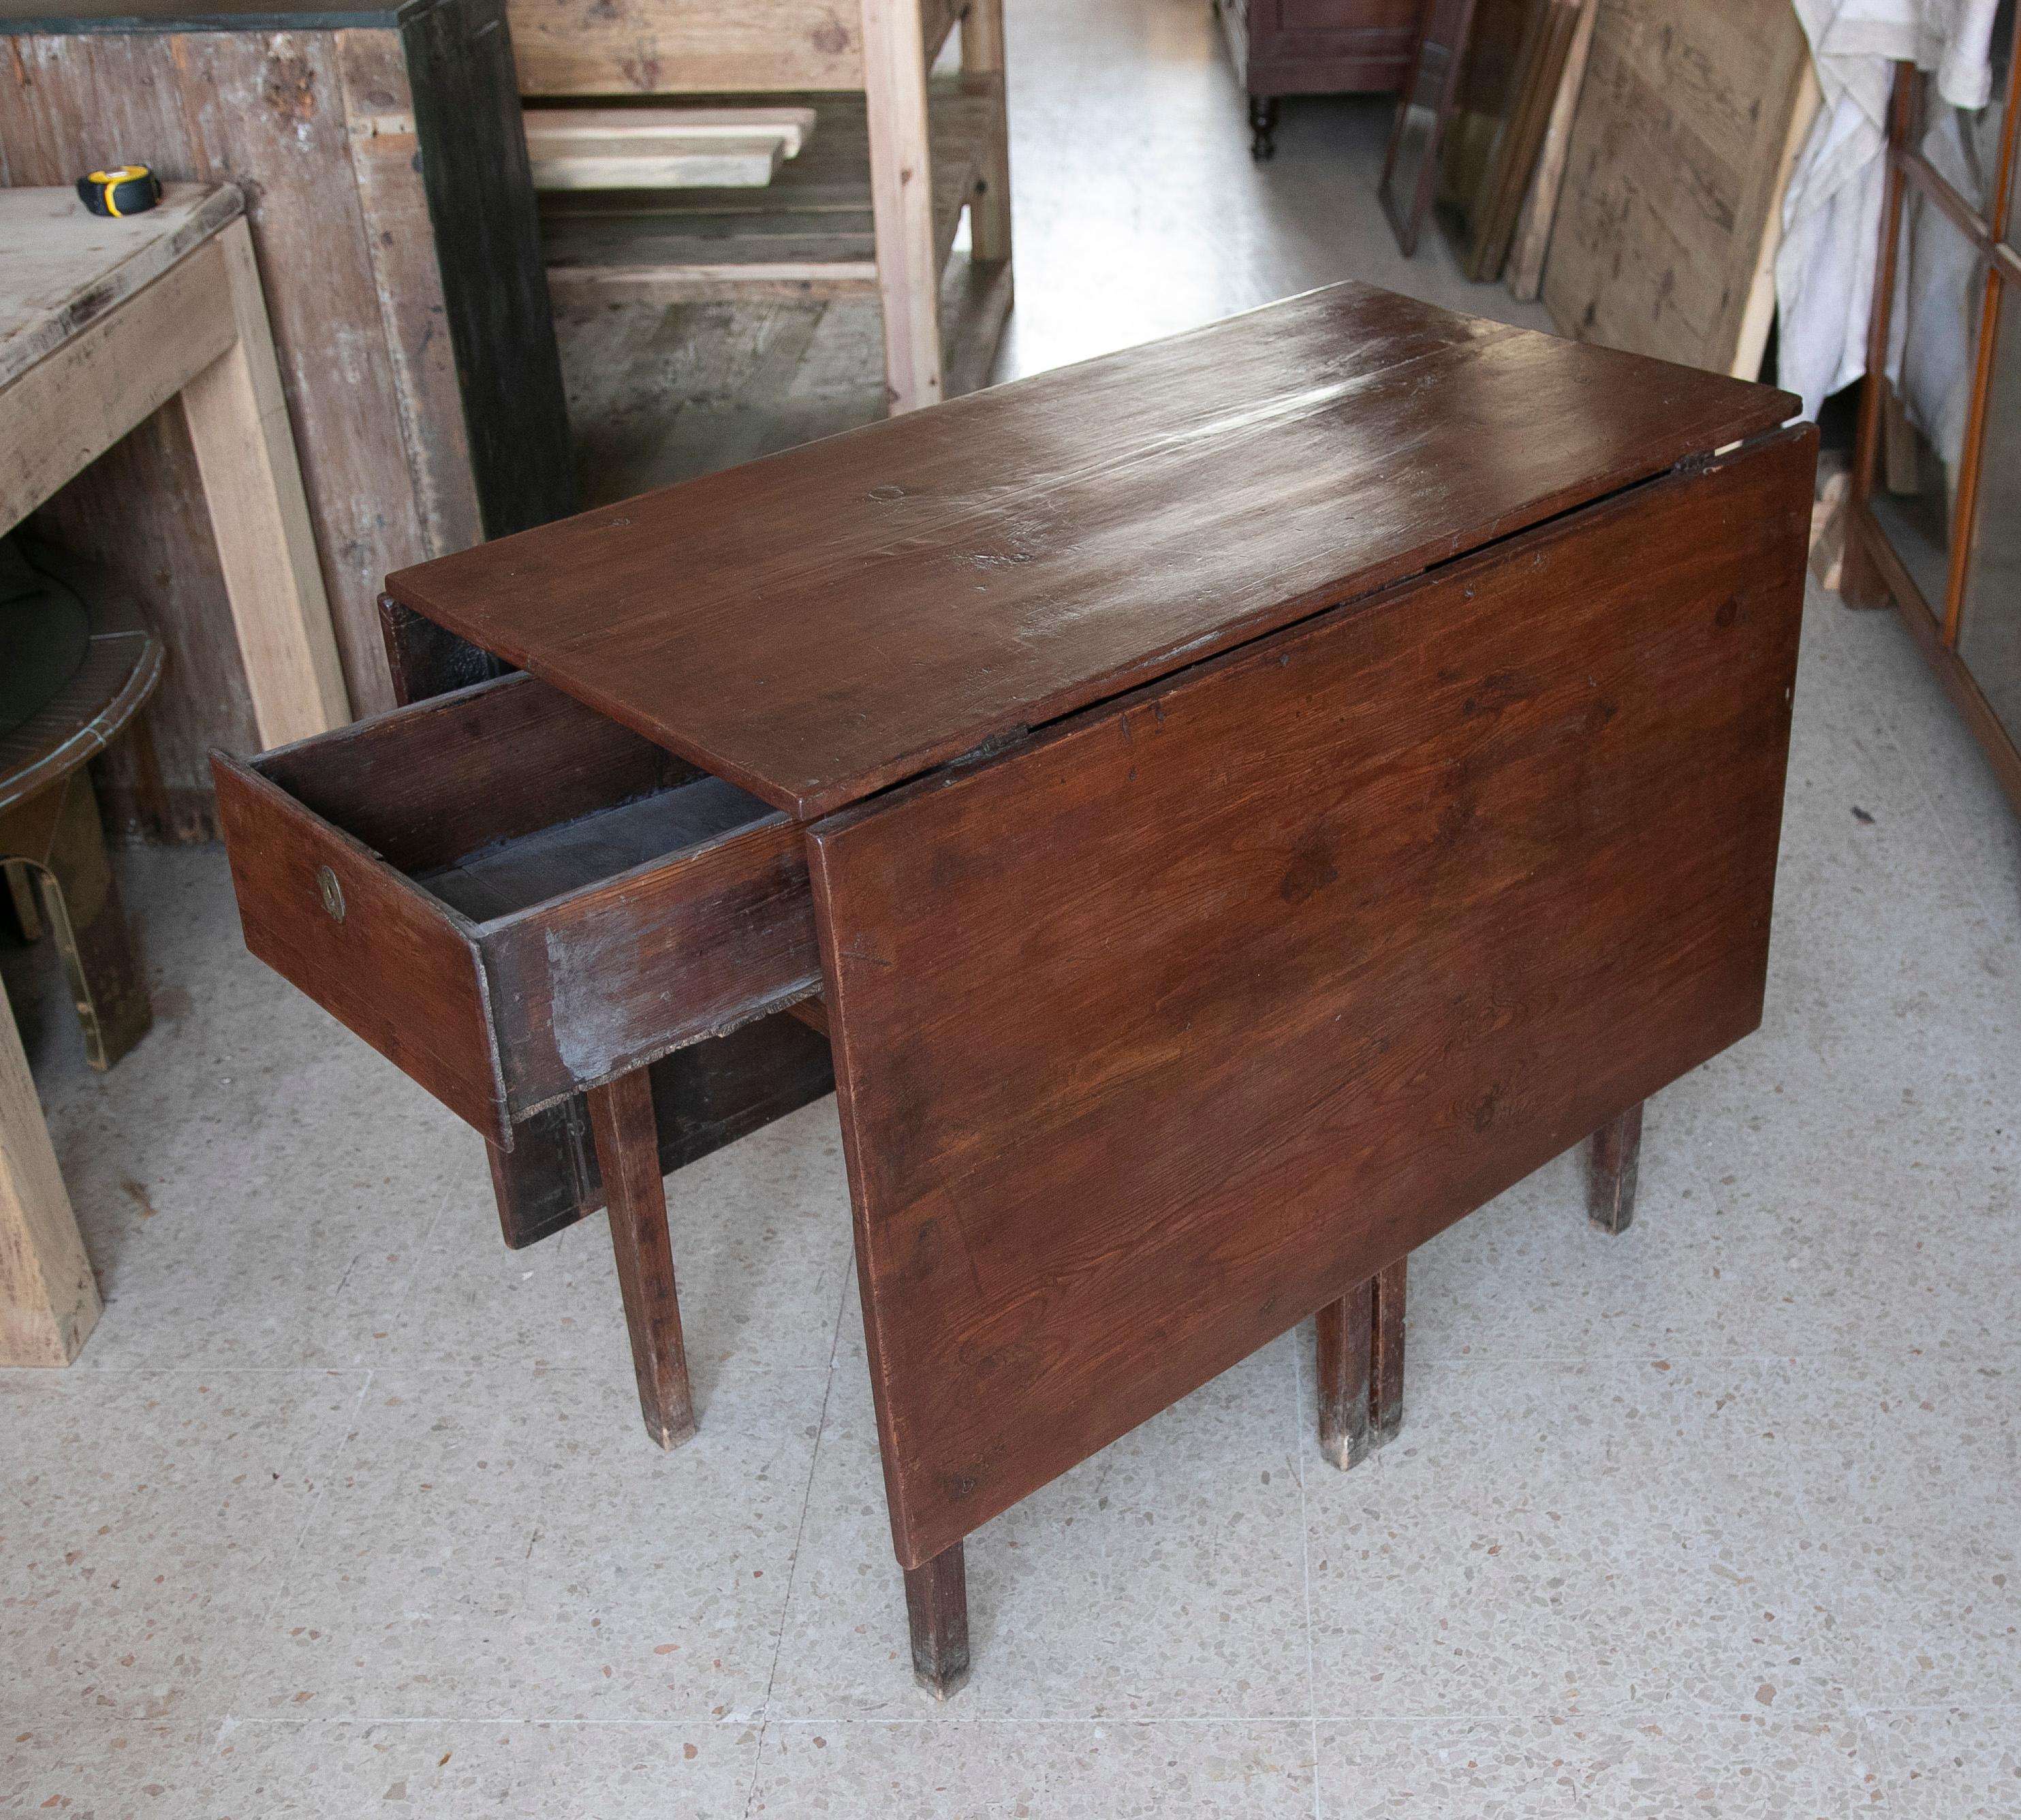 Table pliante en bois avec tiroirs latéraux